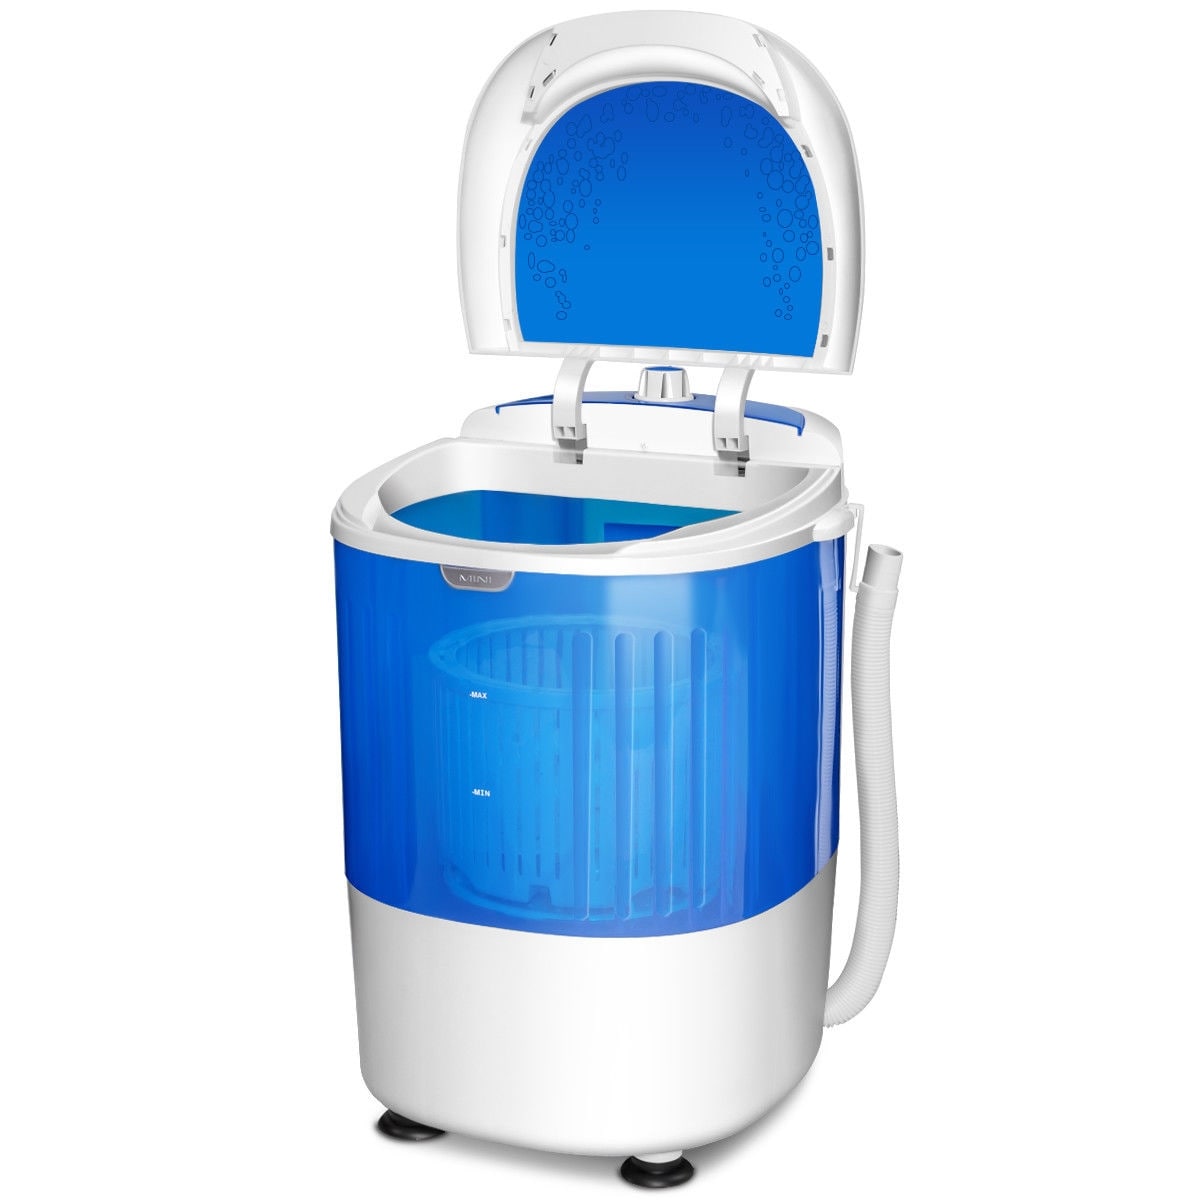  DIGBYS Foldable Mini Washing Machine, Small Washer